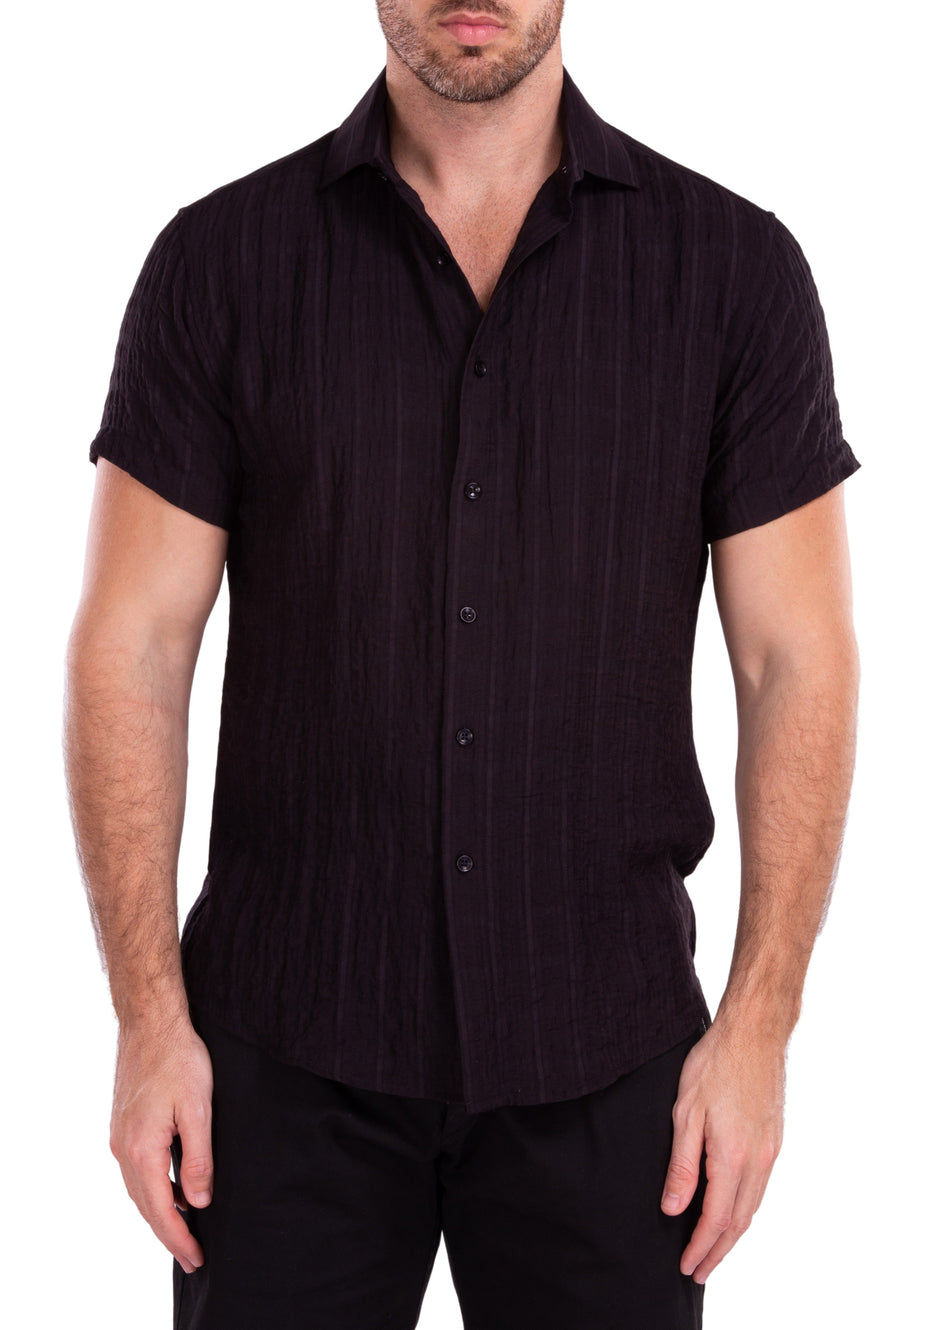 202173 - Black Button Up Short Sleeve Dress Shirt